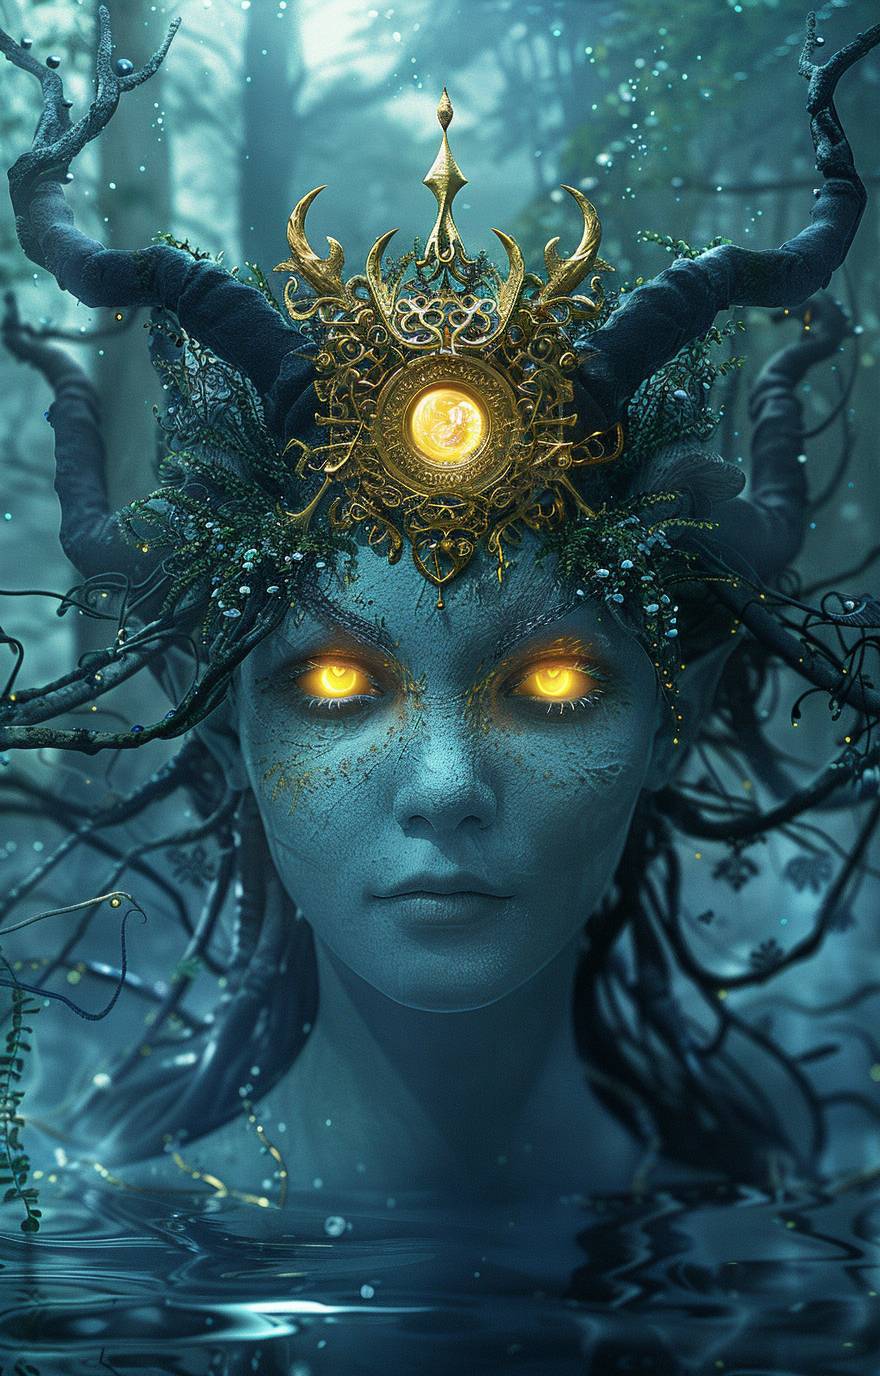 빛나는 황색 눈과 덩굴 머리카락을 지닌 푸른 색의 외계인 여성이 화려한 금빛 왕관을 쓰고 머리 앞쪽에 태양 모양을 한 모습입니다. 이마 양쪽 위에 작은 검은 뿔이 두 개 있으며, 디지털 아트 스타일로 수중에 서 있으며, 뒤에 나무가 보입니다.